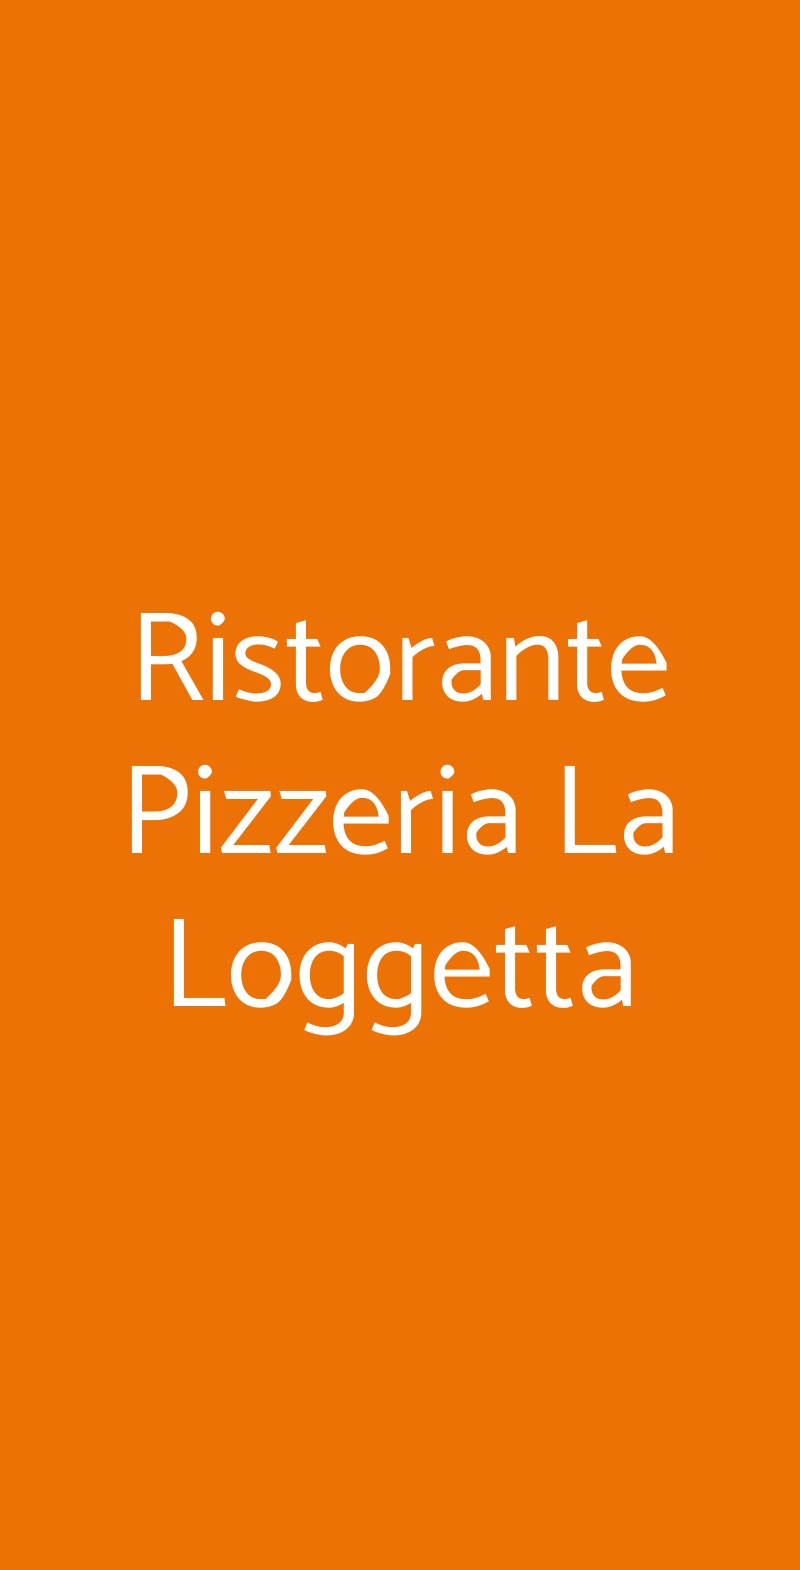 Ristorante Pizzeria La Loggetta Montepulciano menù 1 pagina